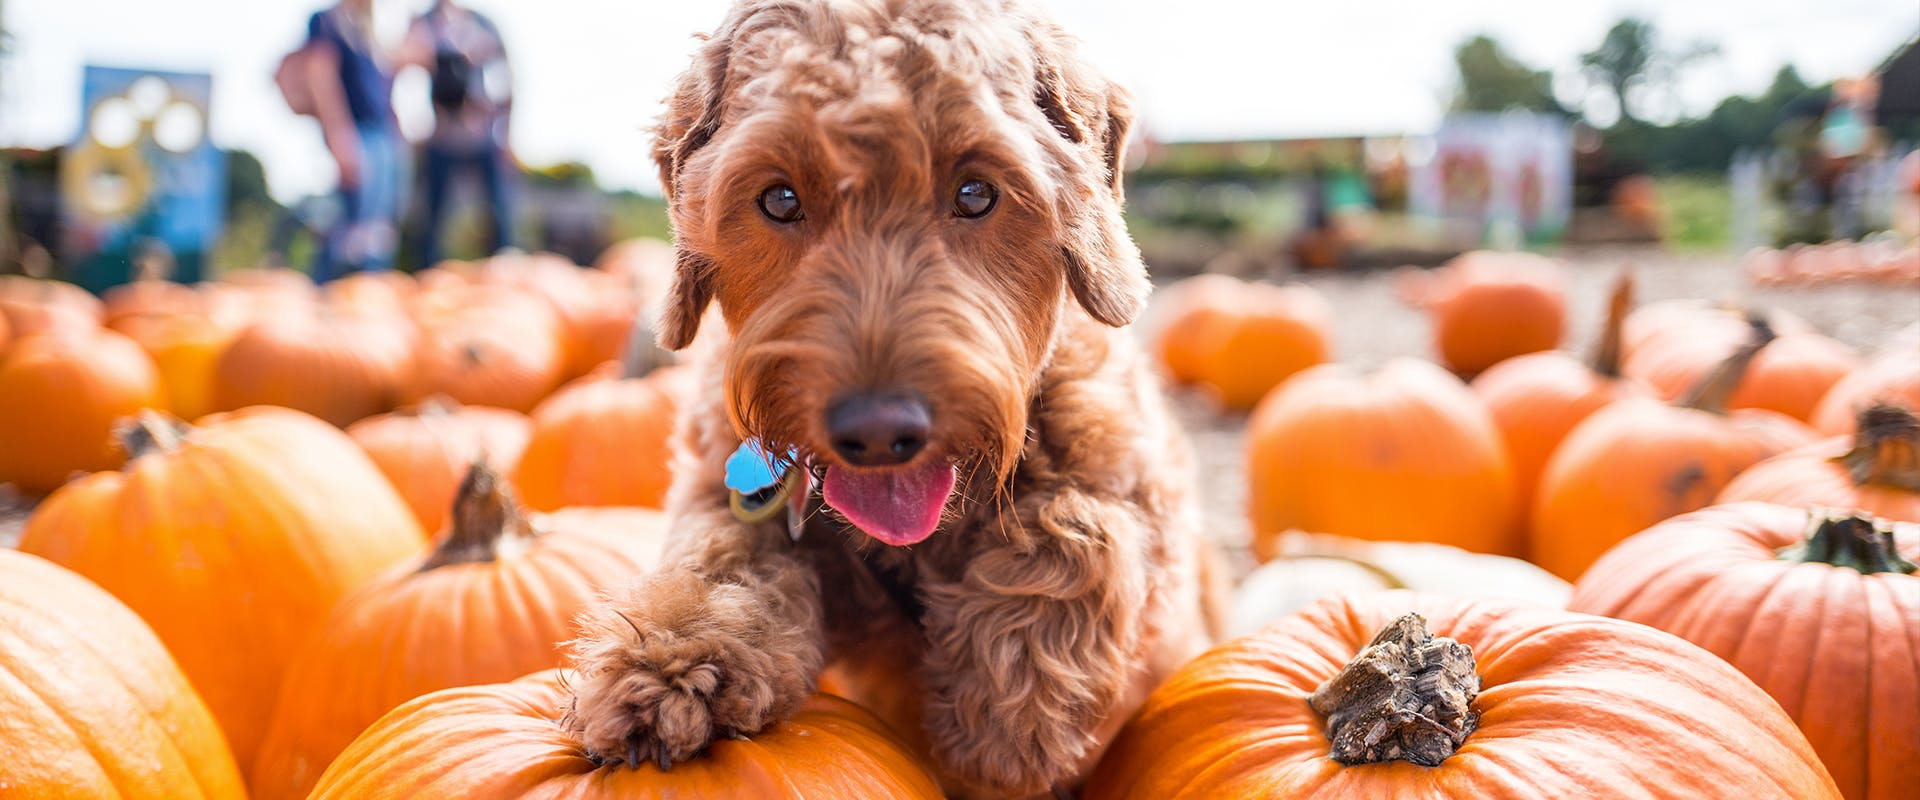 A dog sitting in a pumpkin patch